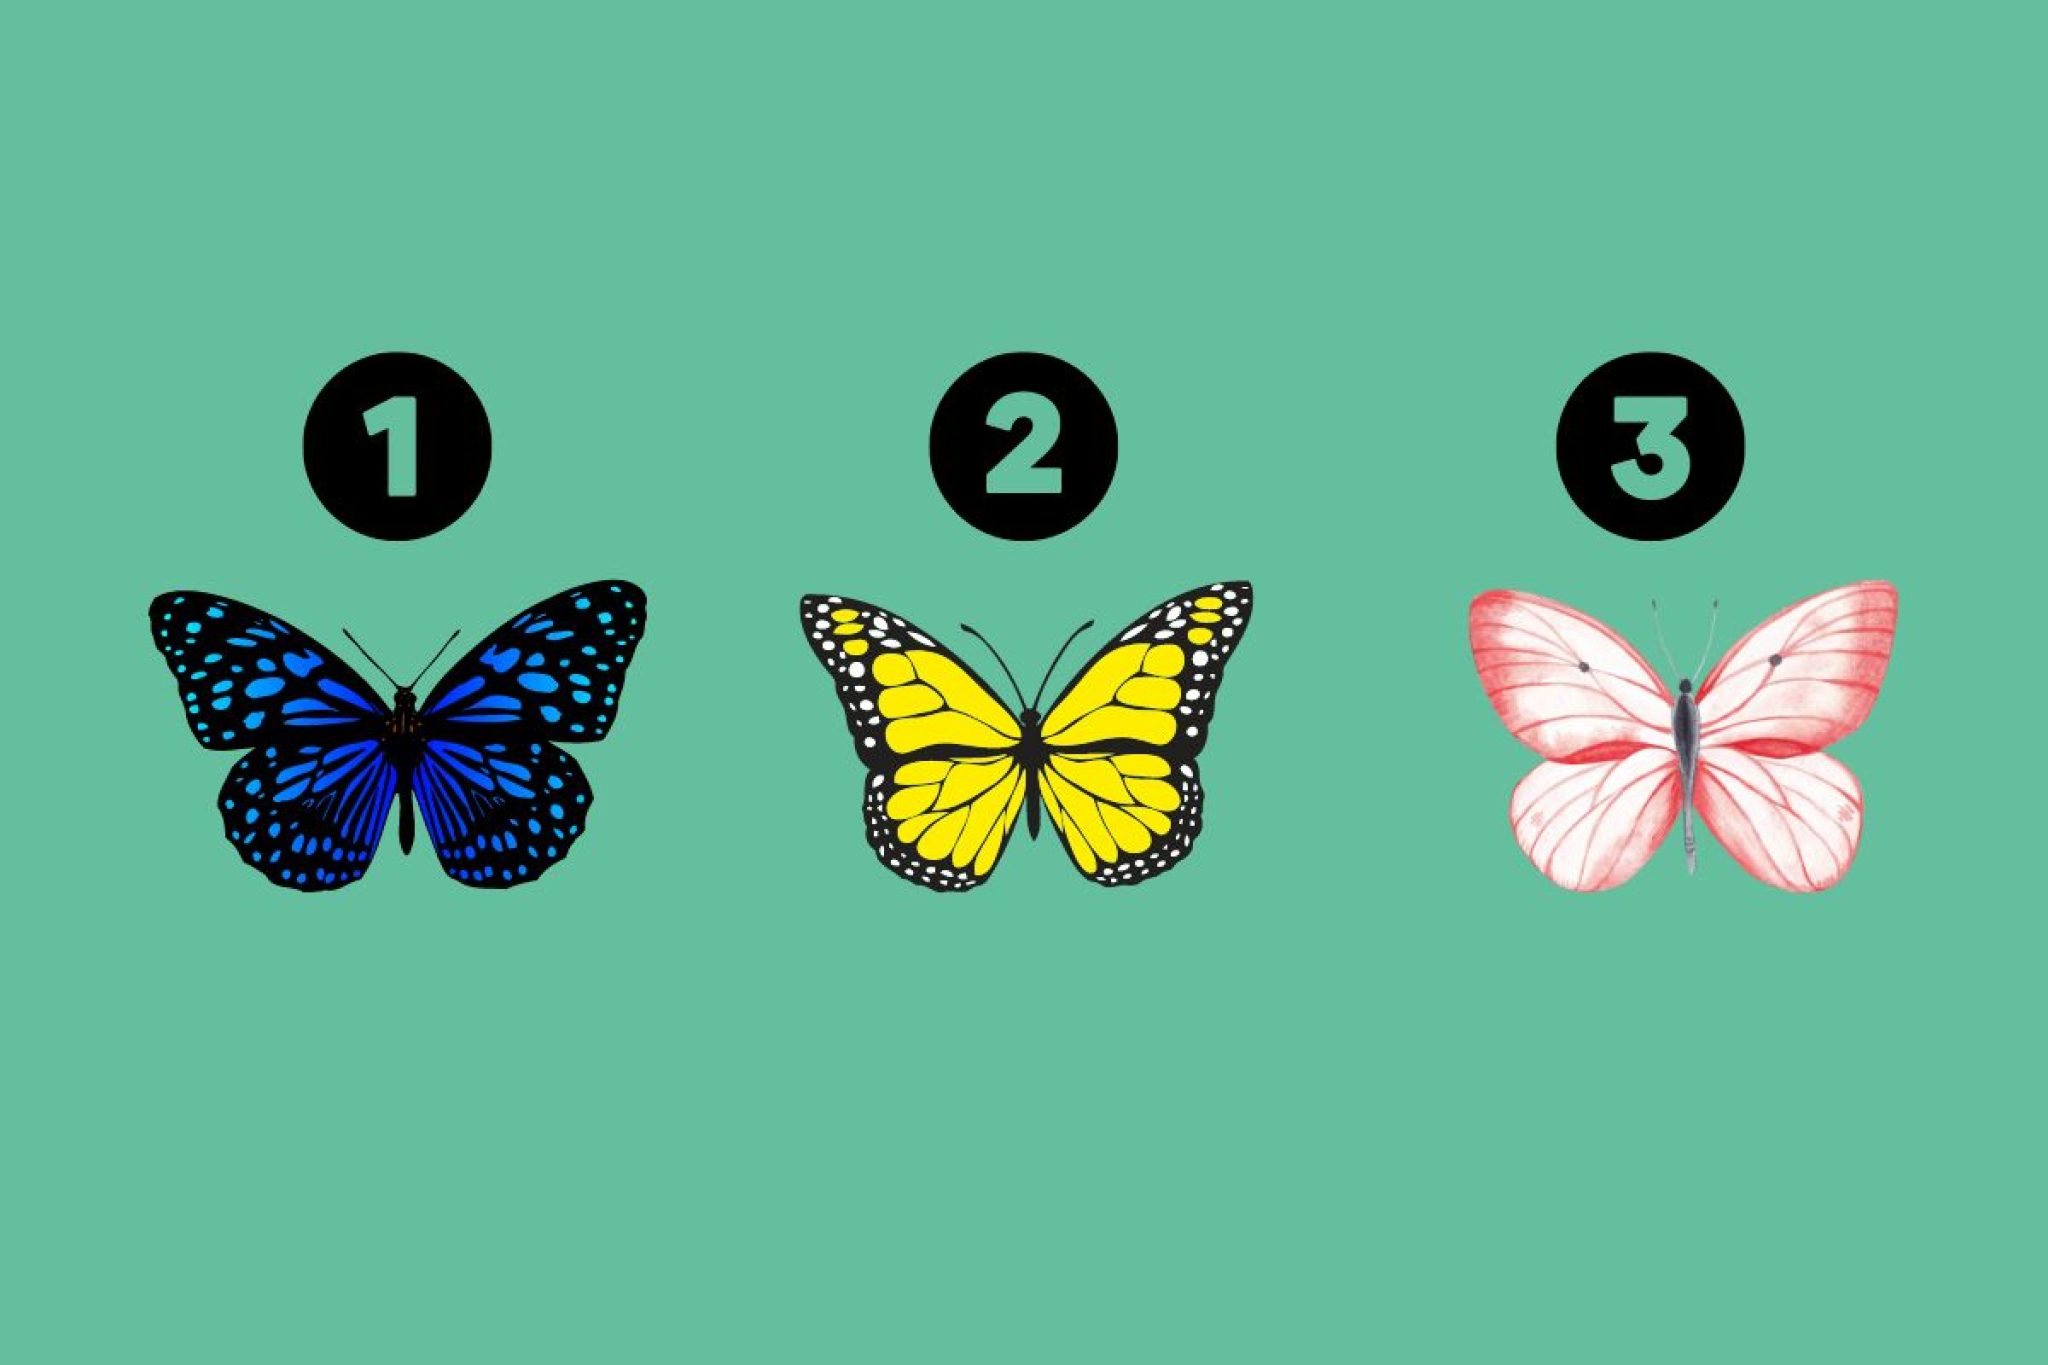 تست شخصیت شناسی:با انتخاب یک پروانه میزان خلاقیت خود را بسنجید